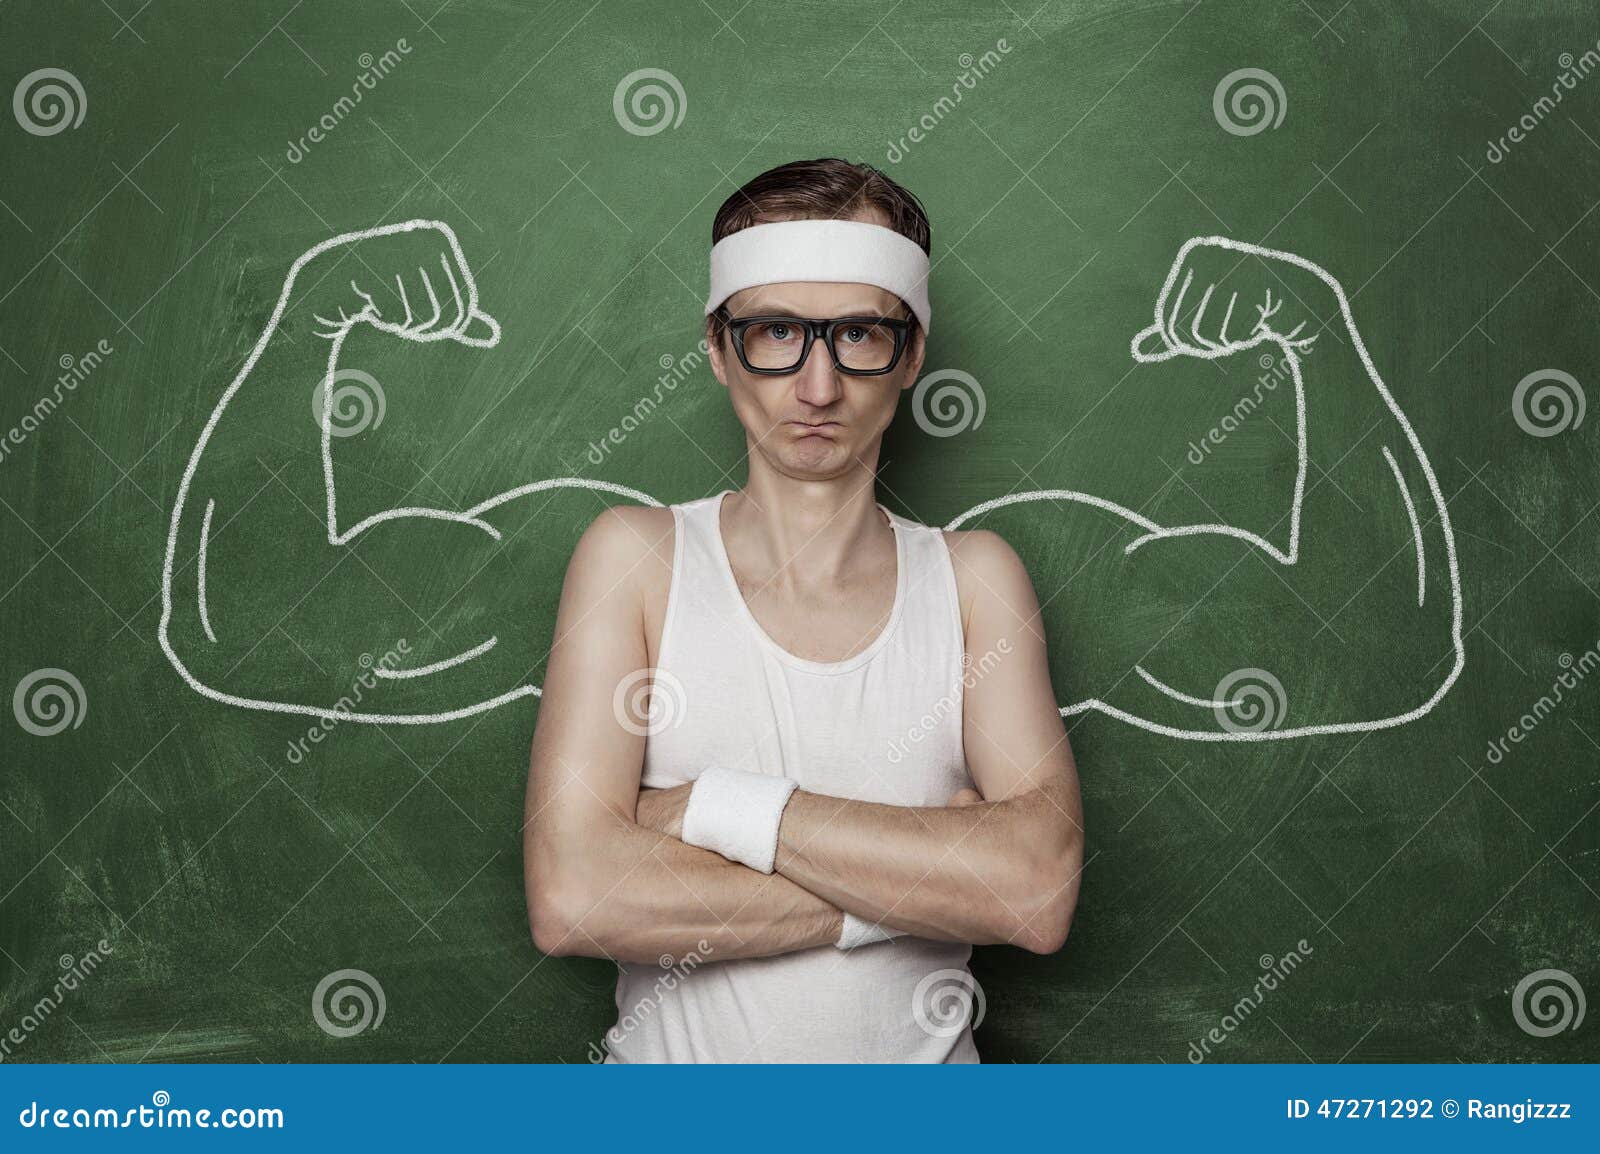 funny-sport-nerd-fake-muscle-drawn-chalkboard-47271292.jpg